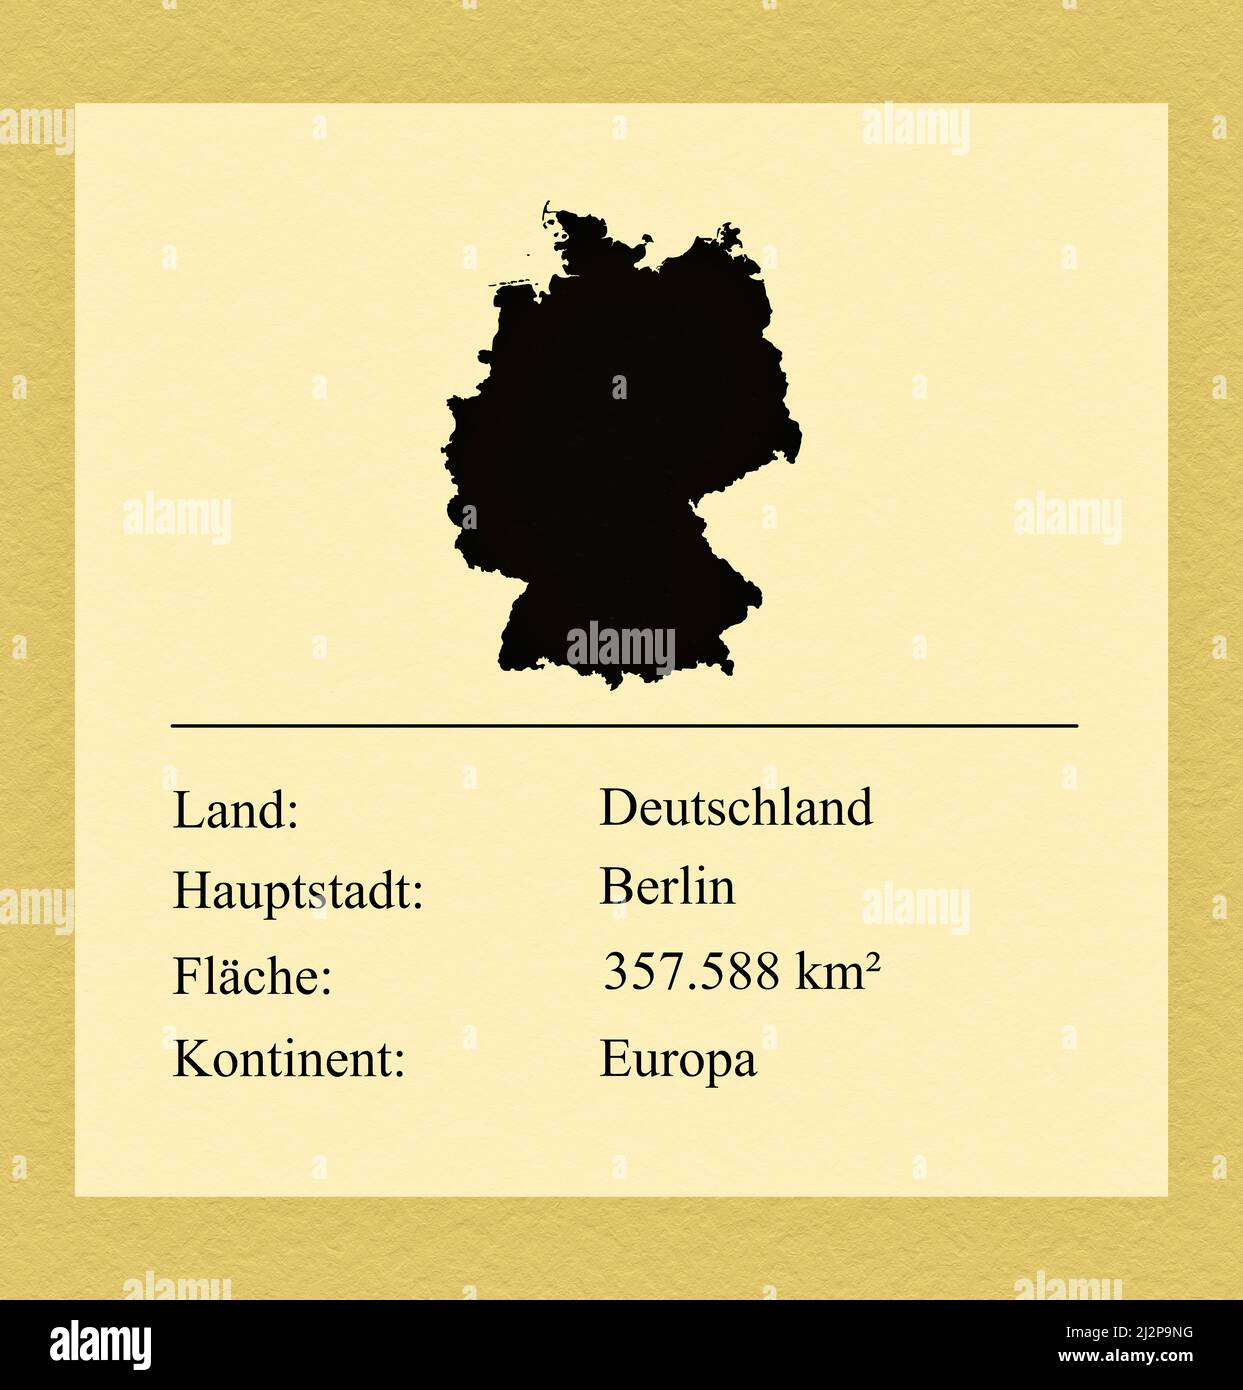 Umrisse des Landes Deutschland, darunter ein kleiner Steckbrief mit Ländernamen, Hauptstadt, Fläche und Kontinent Foto Stock